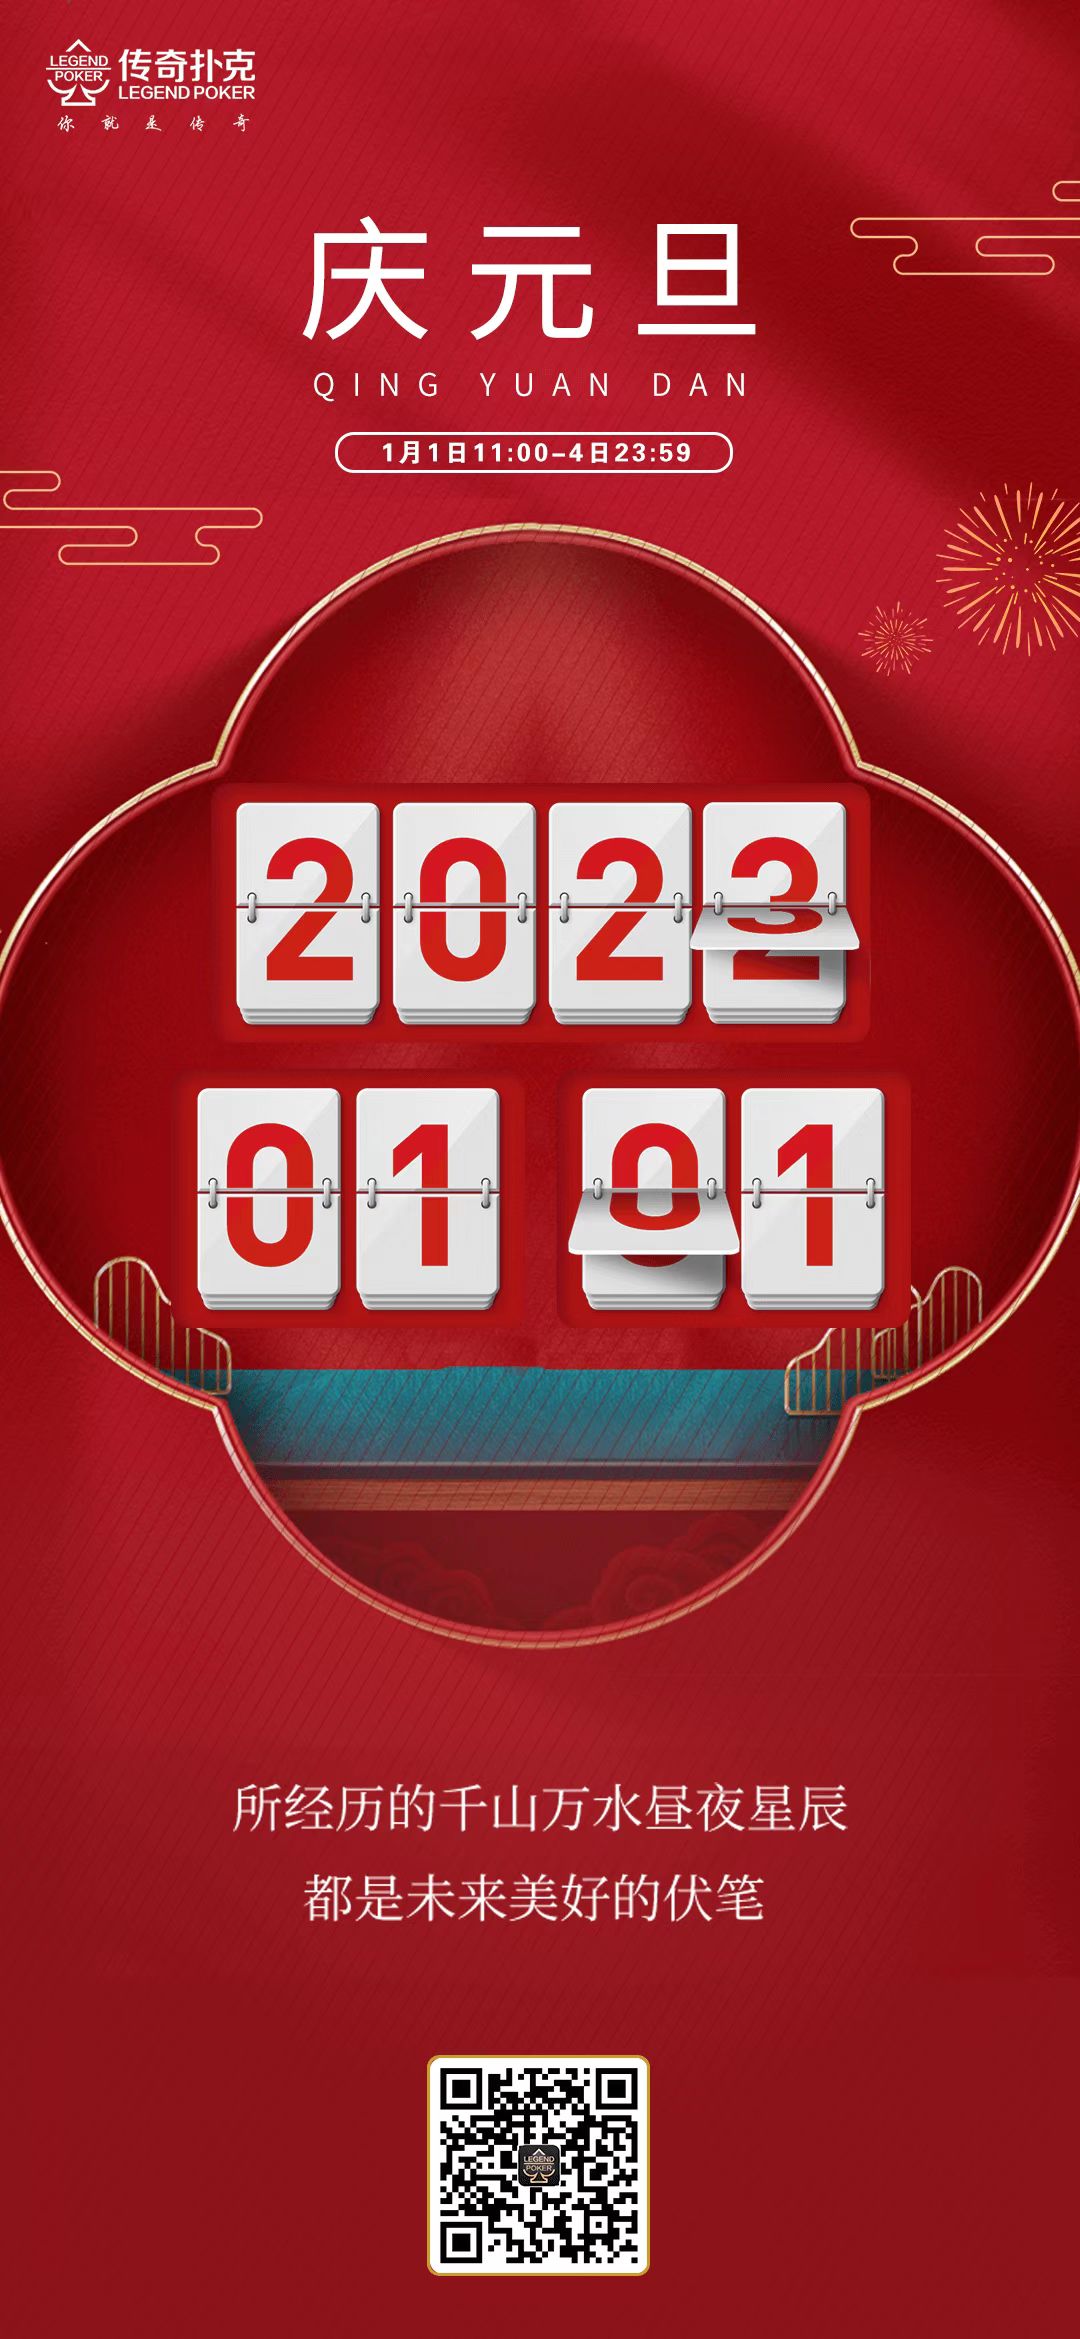 2023年元旦节下载传奇扑克APP领多重福利